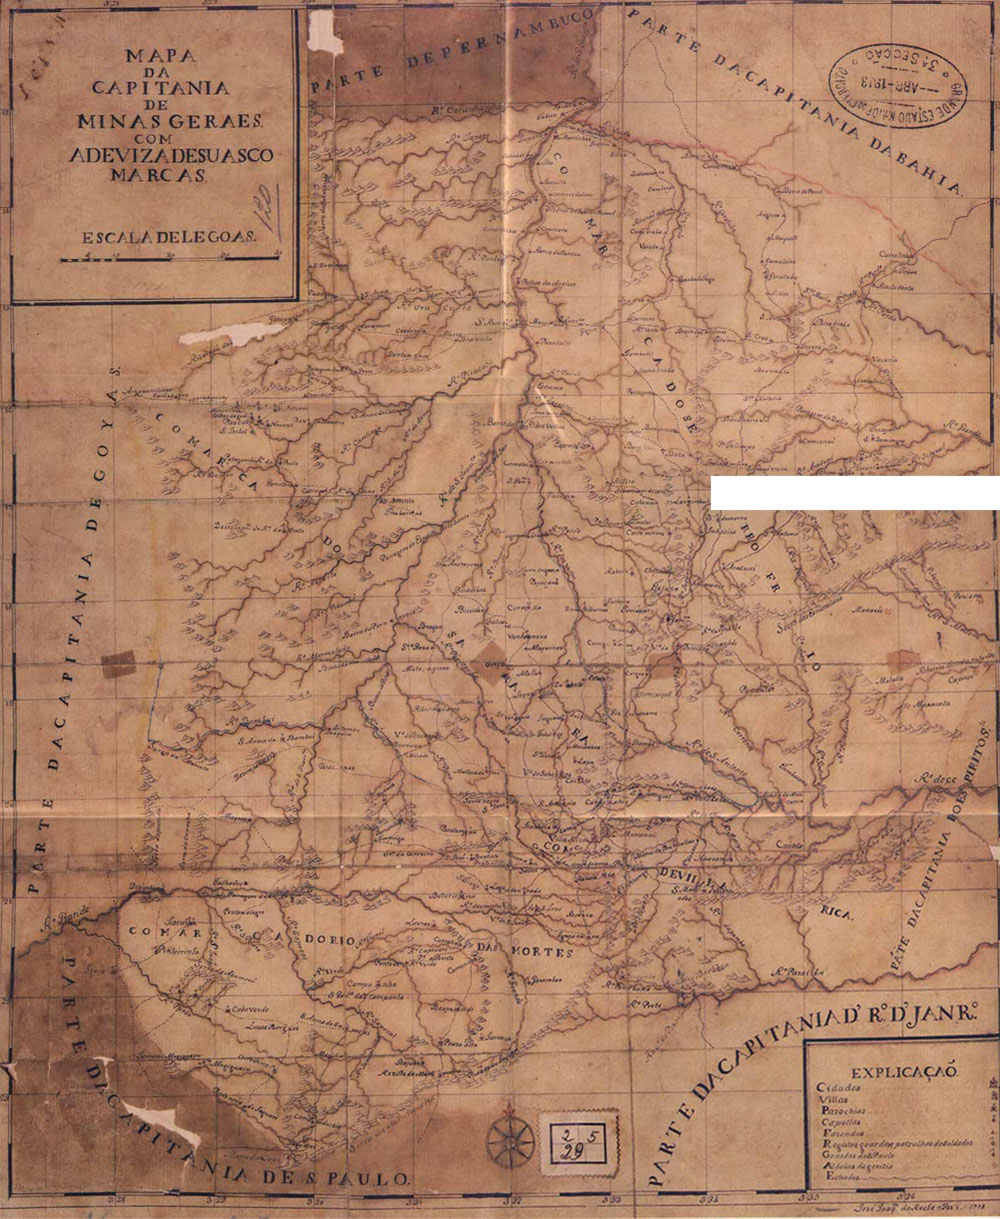 Mapa da região da bacia do rio das velhas do ano de 1788 :: Fonte: www.asminasgerais.com.br/ZonadaMata/Biblioteca